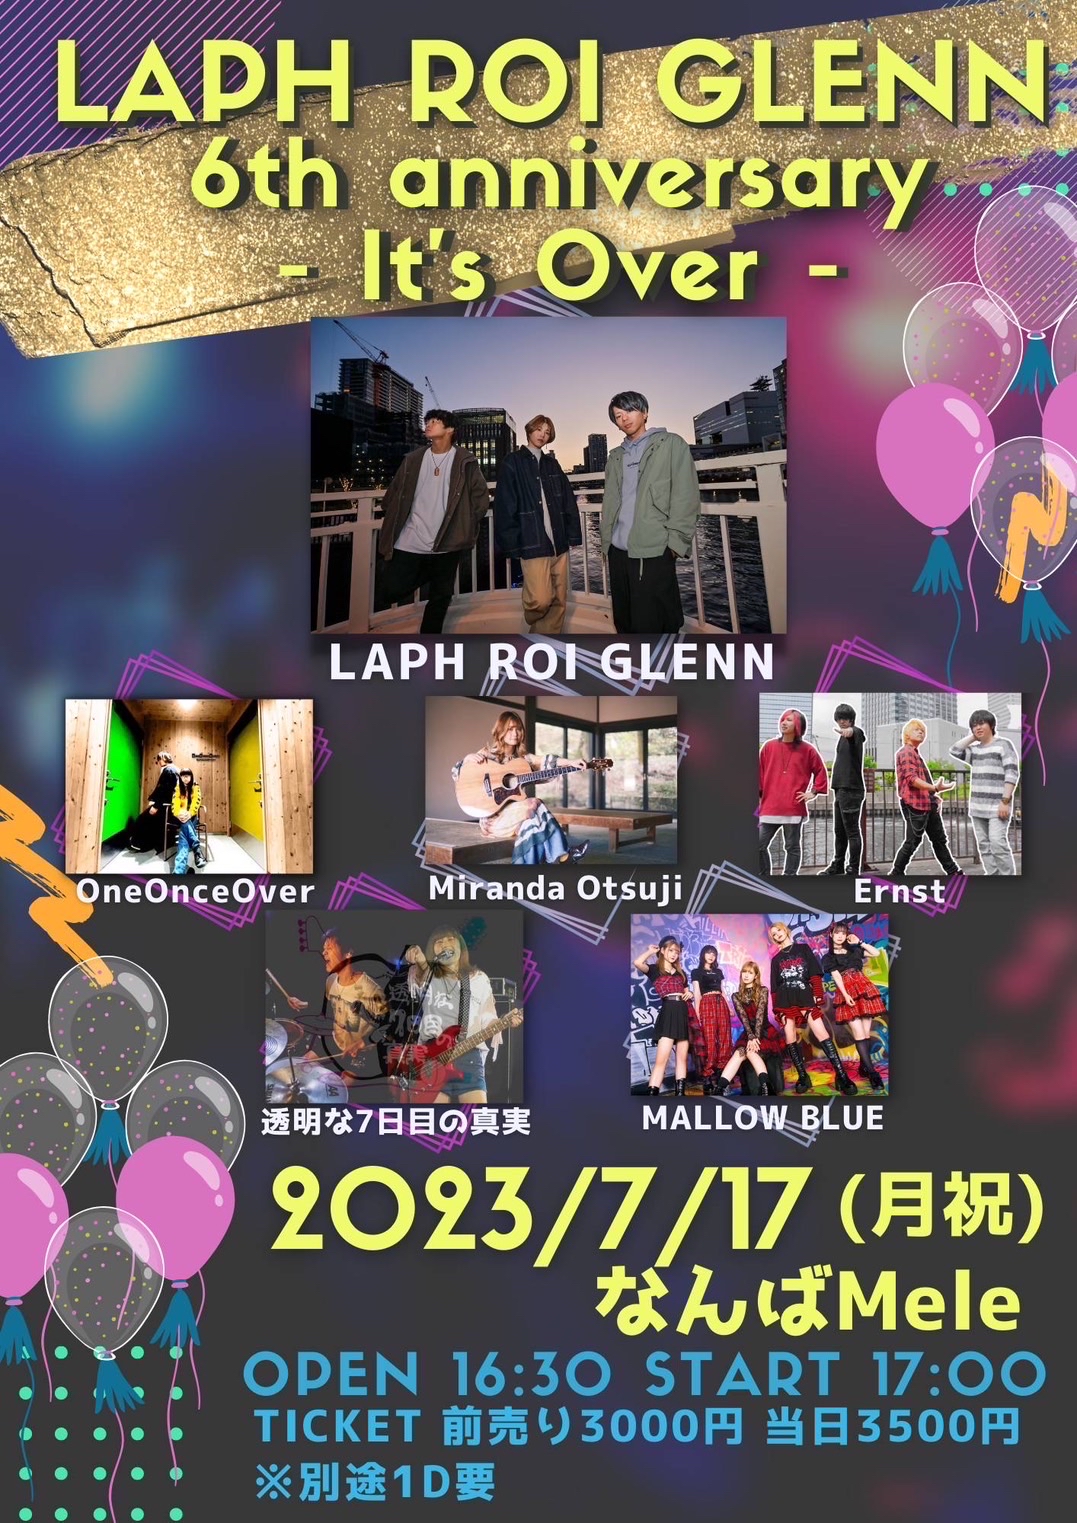 星井あおサポート出演公演(MALLOW BLUE)『LAPH ROI GLENN 6th anniversary -It’s Over-』